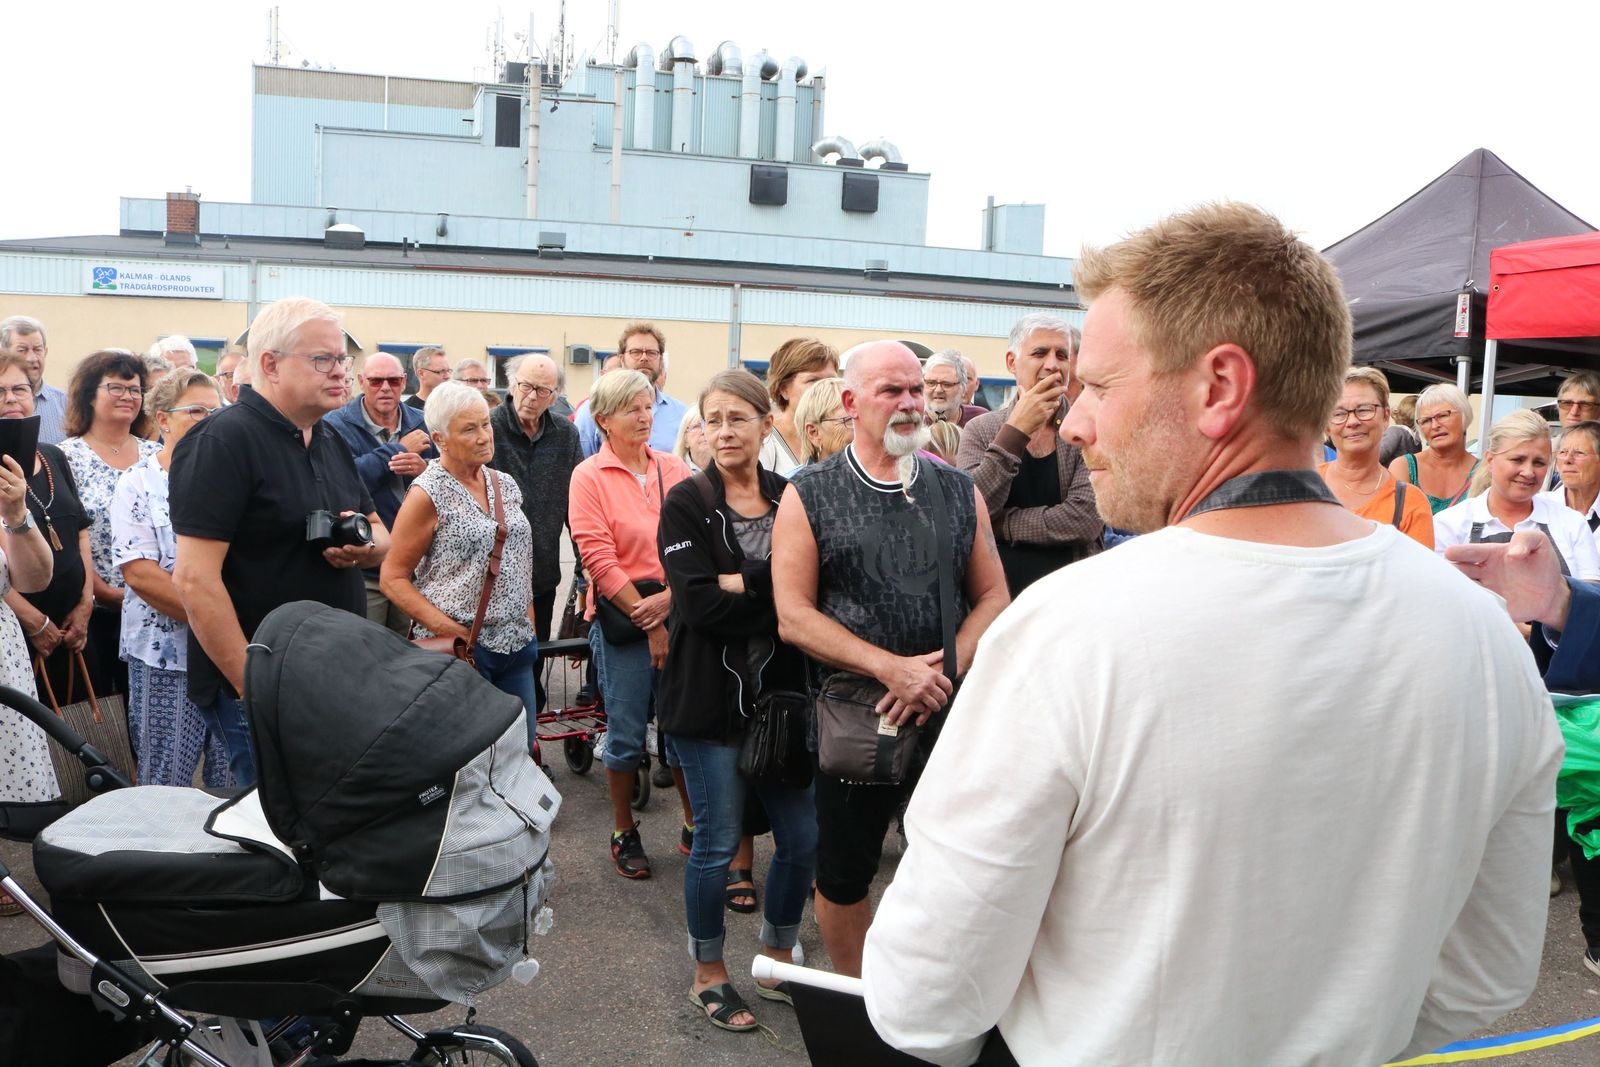 Tony Åhlund spanar över folkmassan som samlats utanför Färjestadens nya matbutik.